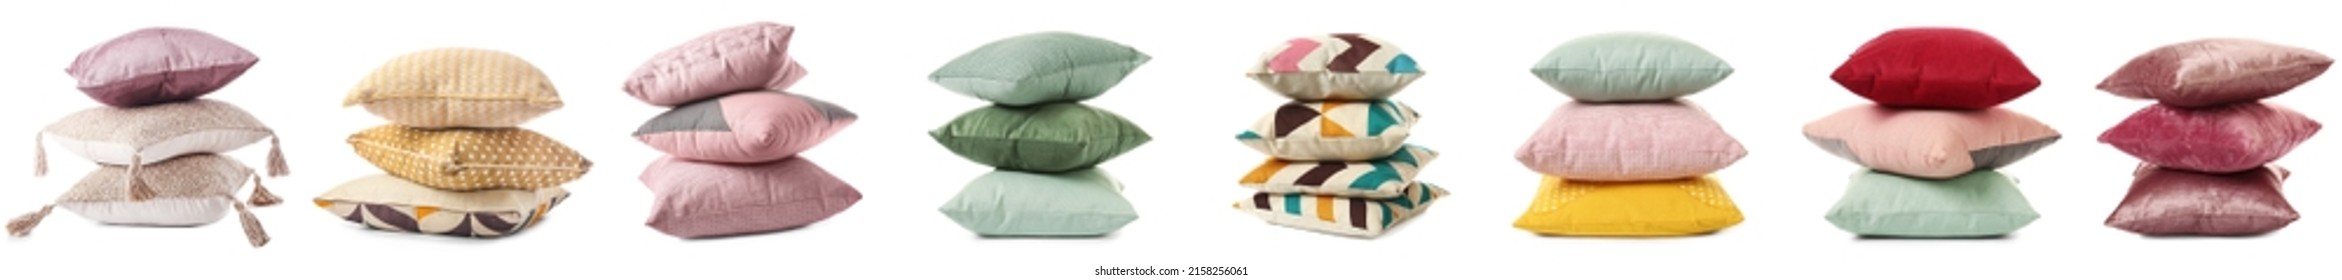 Set of soft cushions on white background